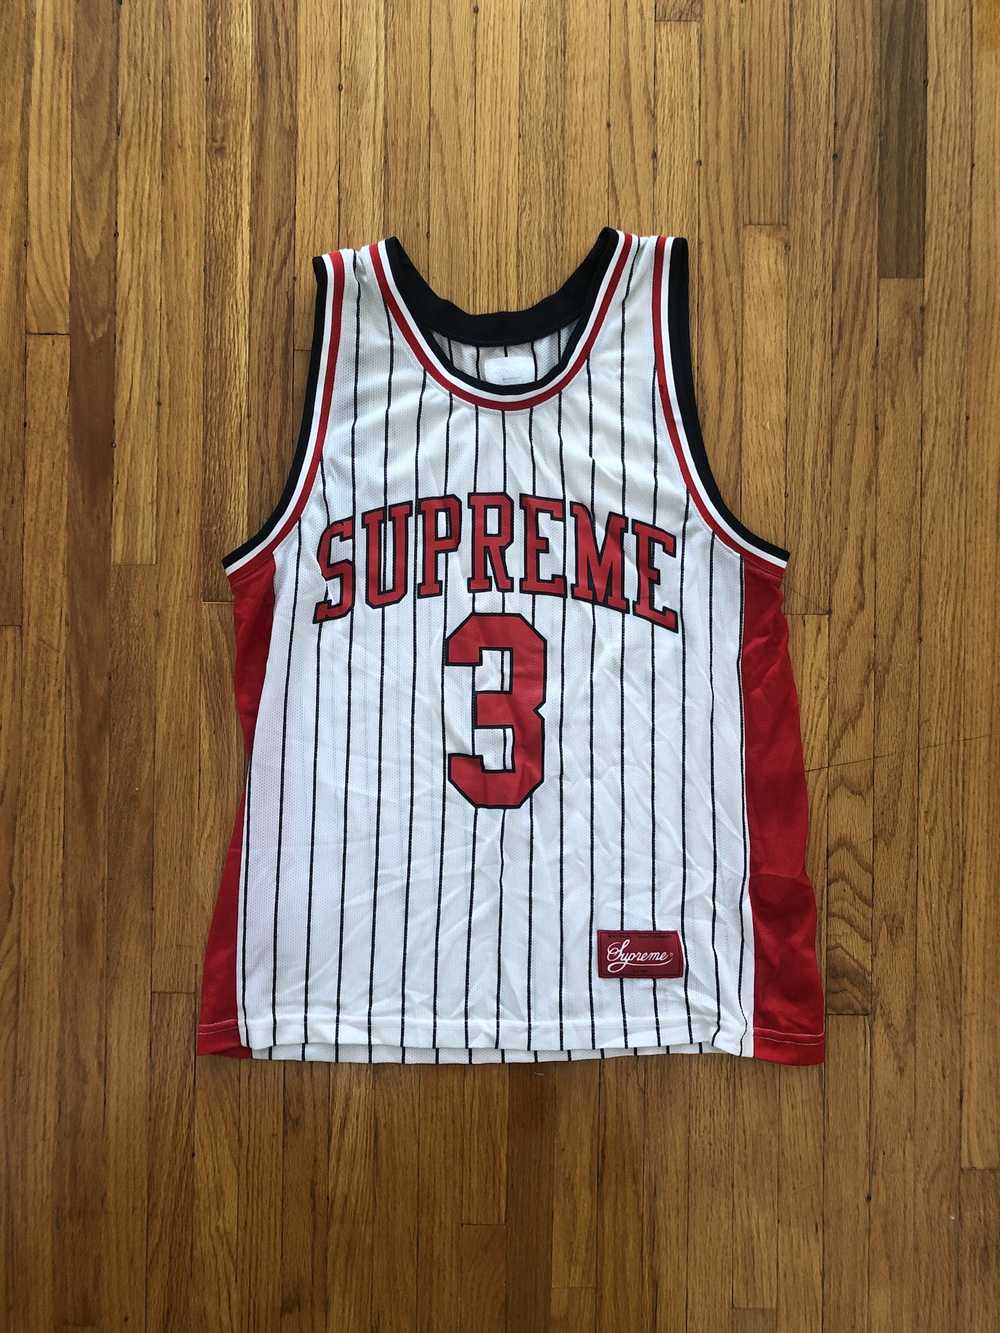 Supreme Supreme Basketball Jersey - image 1